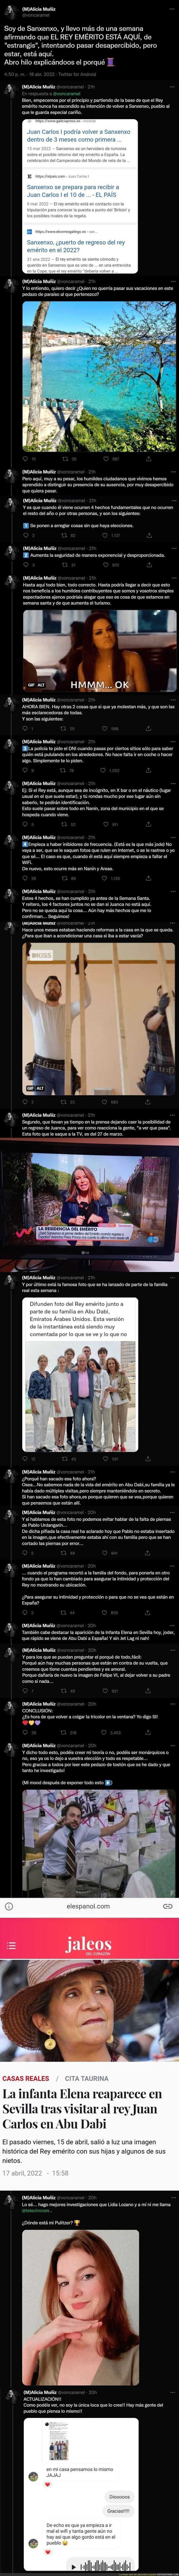 El Rey Juan Carlos lleva unas semanas escondido en Sanxenxo, esta usuaria de Twitter destapa el gran secreto